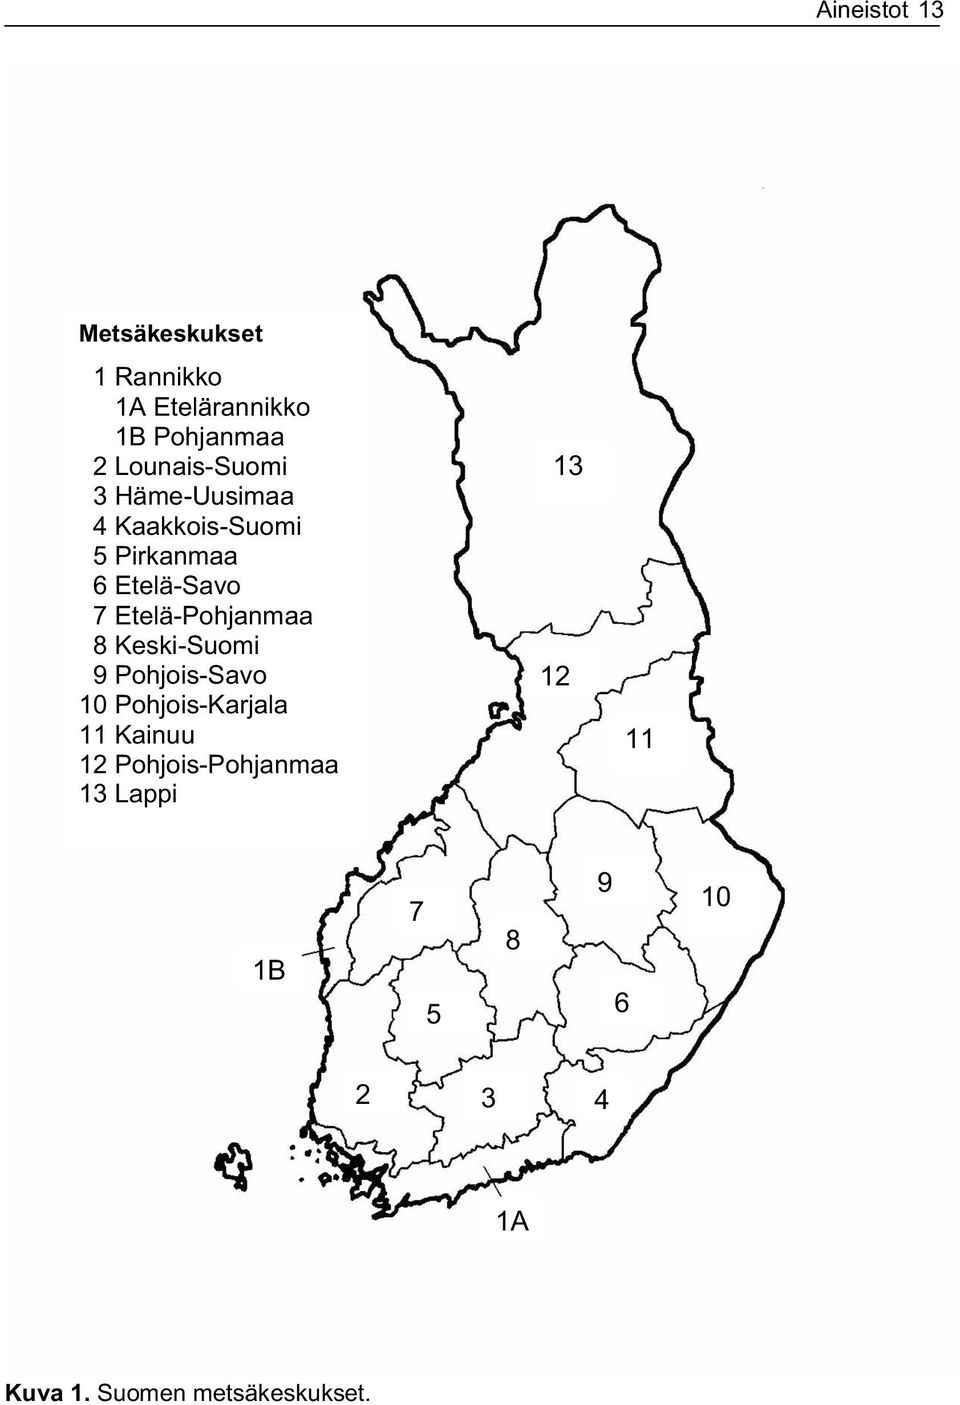 Etelä-Pohjanmaa 8 Keski-Suomi 9 Pohjois-Savo 10 Pohjois-Karjala 11 Kainuu 12